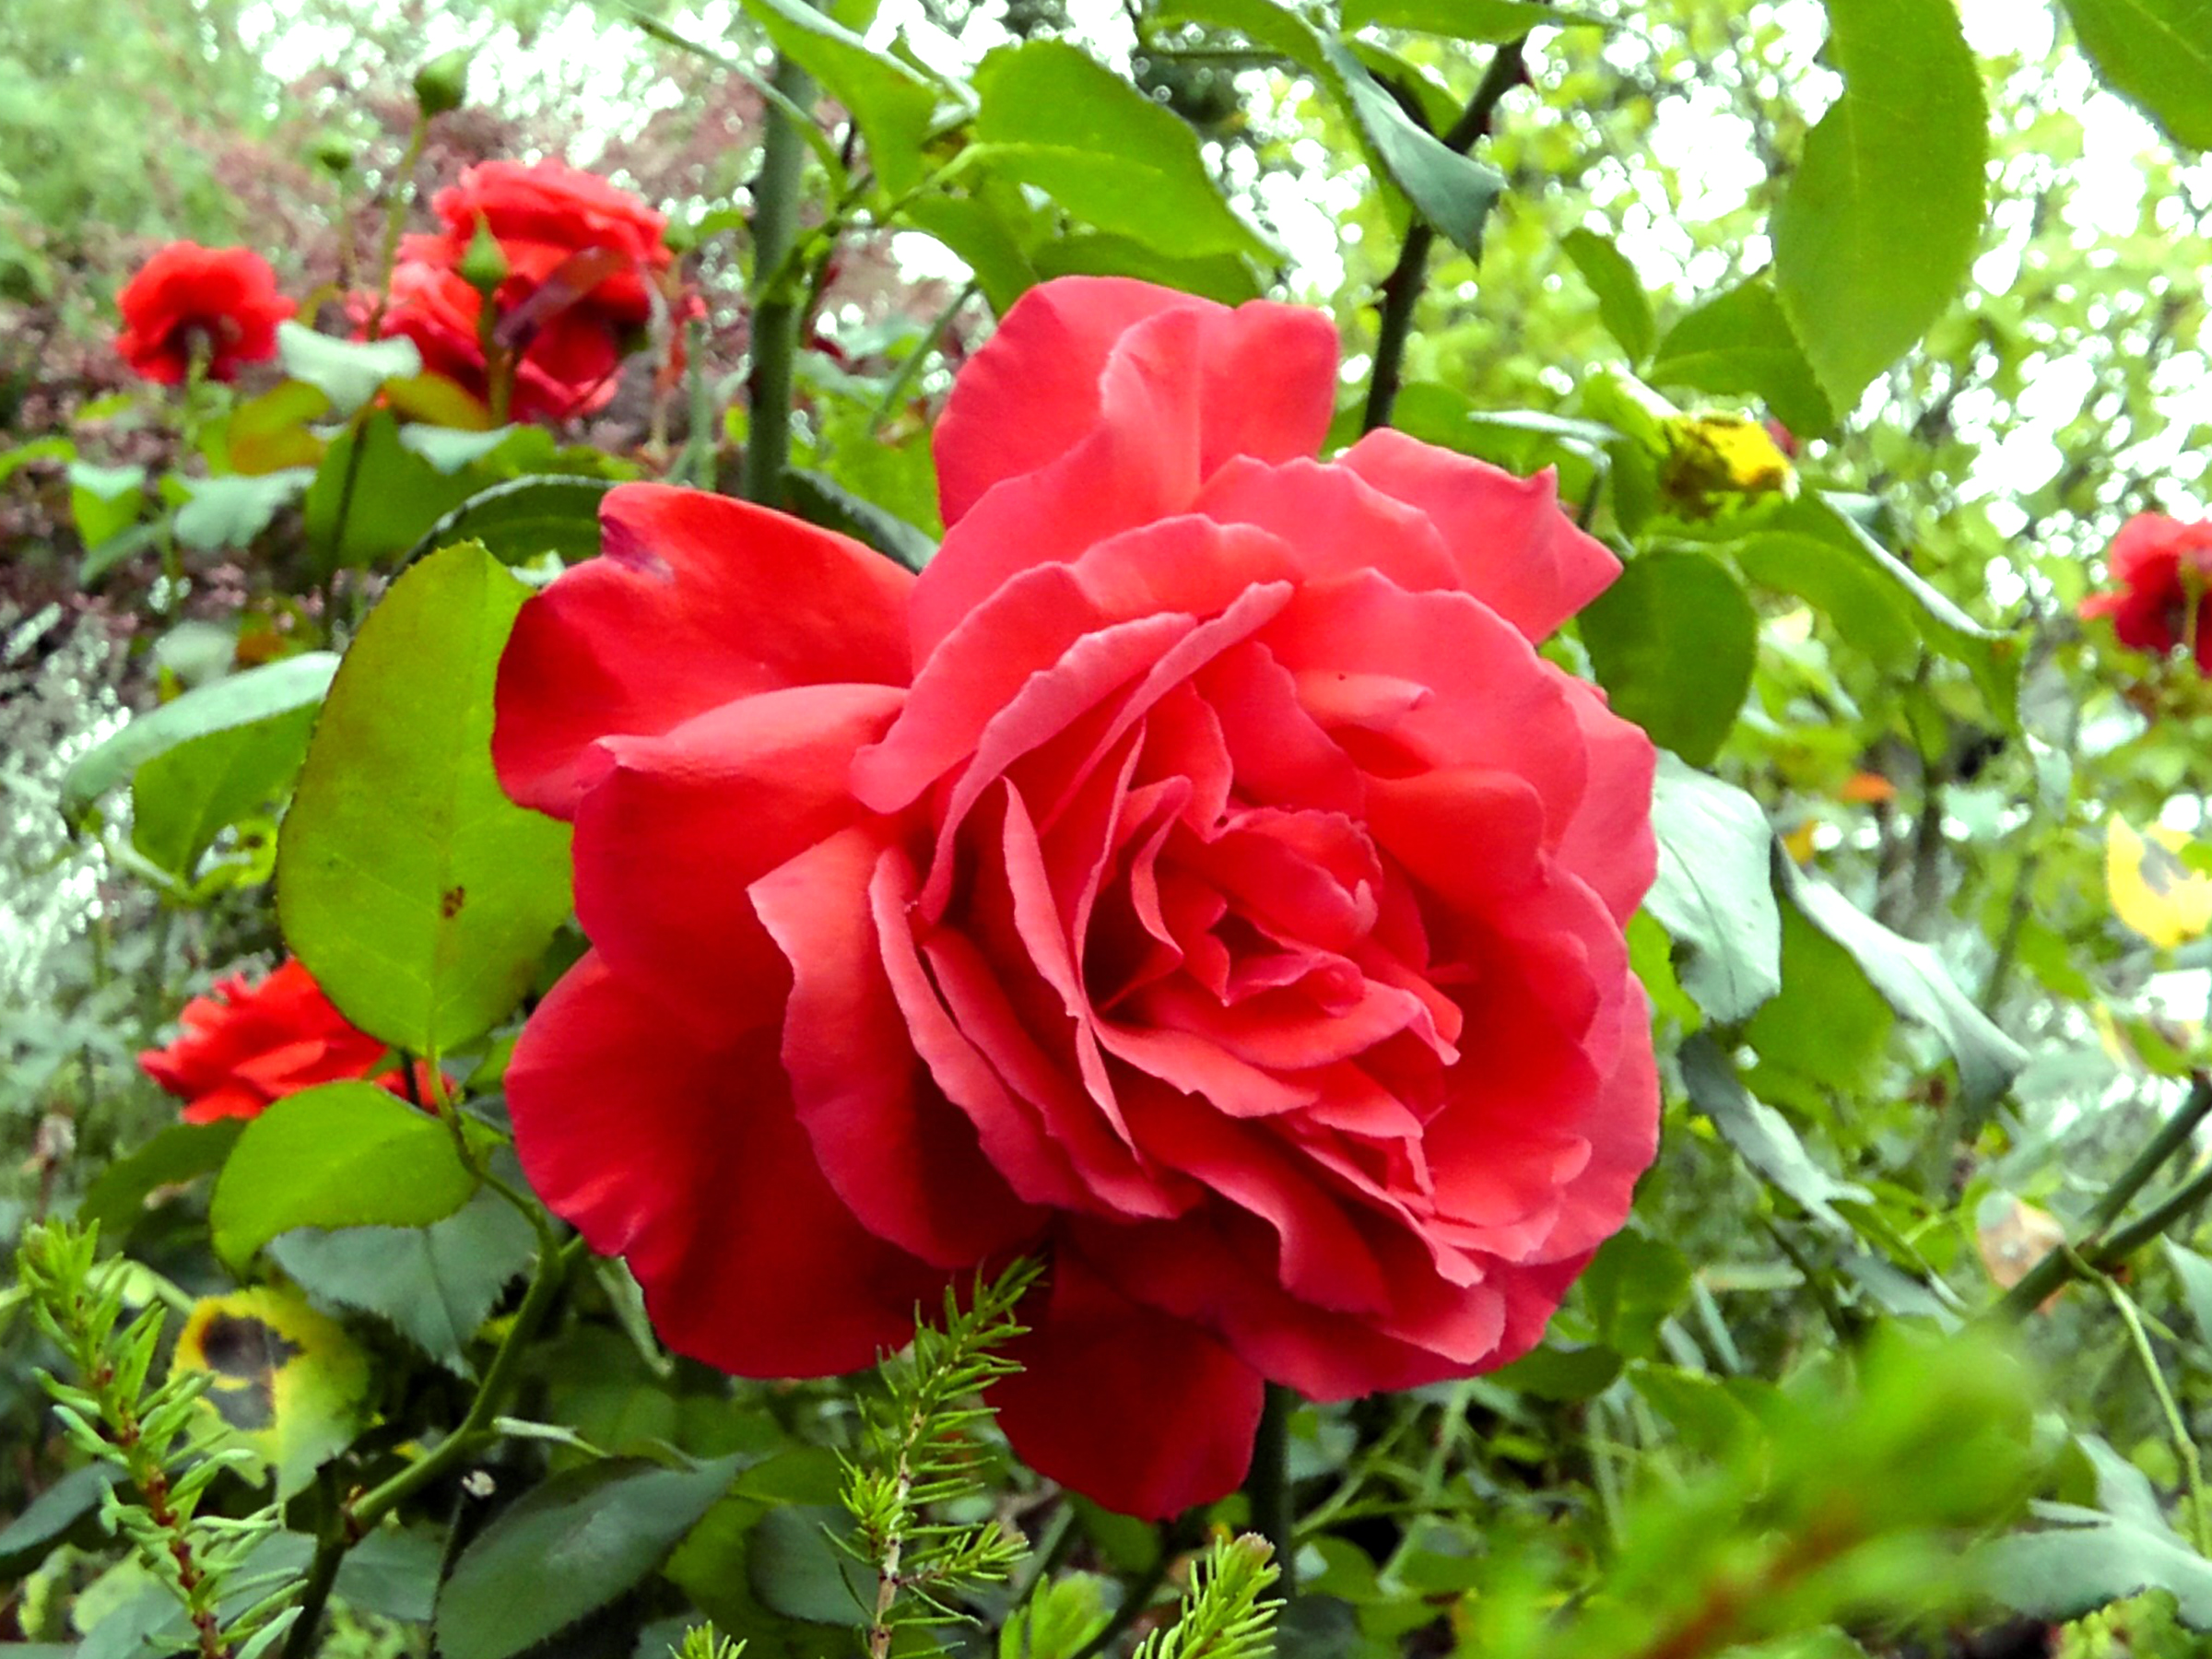 rose blume wallpaper hd kostenloser download,blume,blühende pflanze,julia kind stand auf,gartenrosen,floribunda